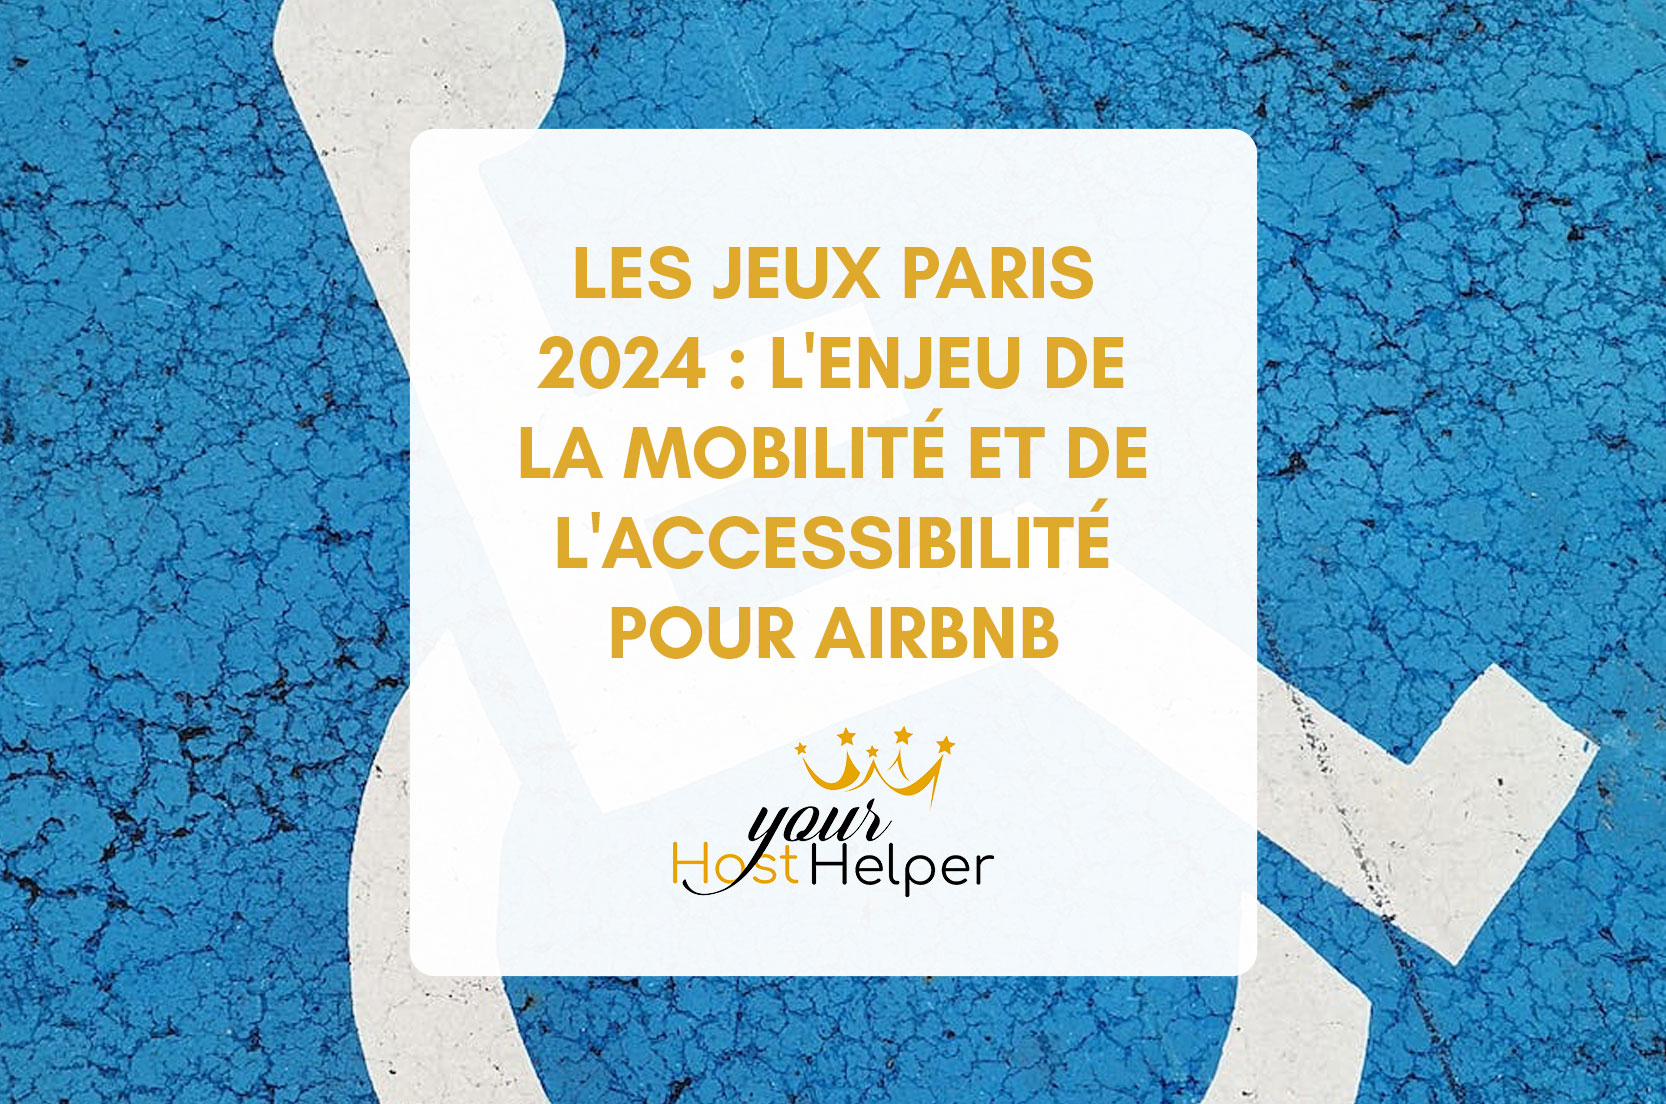 You are currently viewing Les Jeux Paris 2024 : L’enjeu de la mobilité et de l’accessibilité pour Airbnb